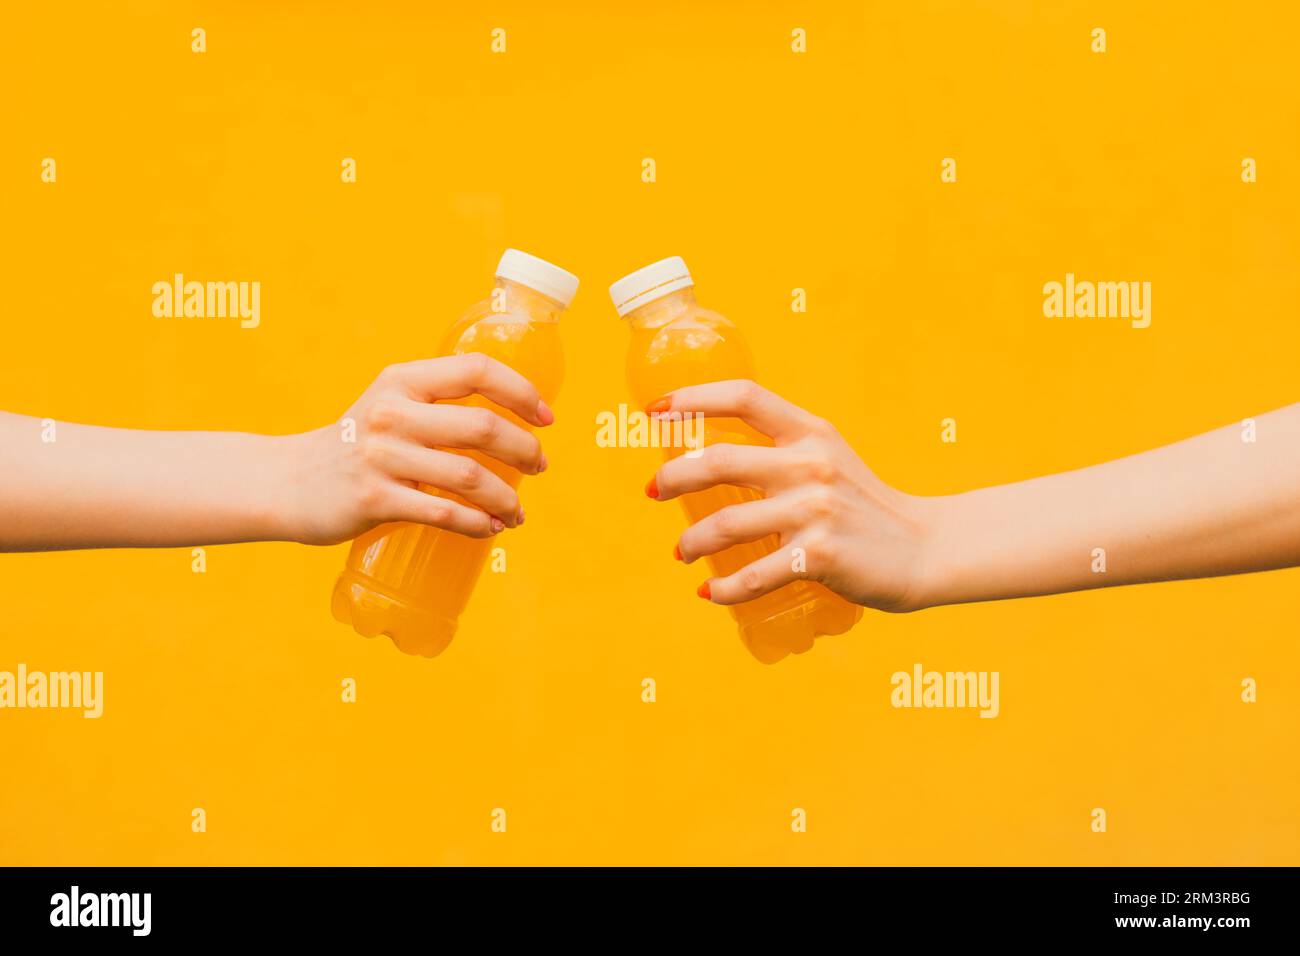 Zwei nicht erkennbare junge Frauen halten in seiner Hand die orange Limonade Plastikflasche auf gelbem Straßenmauerhintergrund, Nahaufnahme Seitenansicht Stockfoto